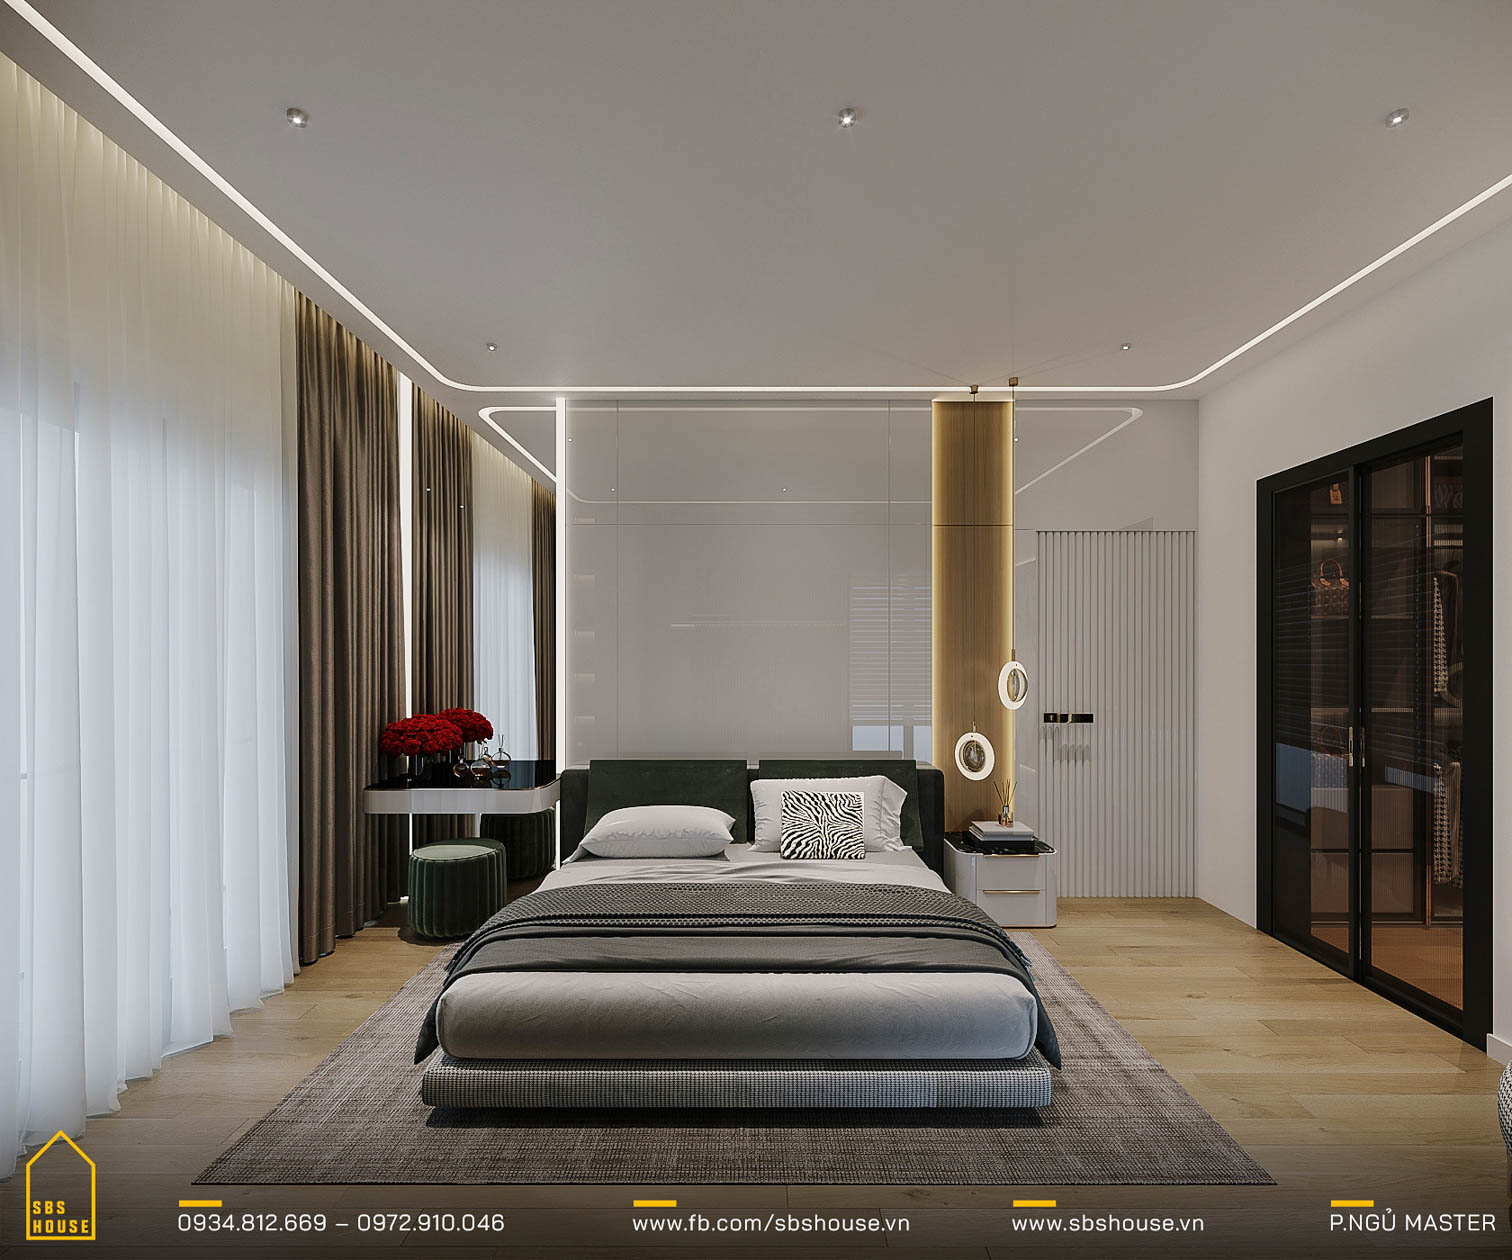 Các phòng ngủ có diện tích lớn, thiết kế sang trọng với phòng tắm riêng mang lại sự riêng tư và thoải mái tối đa.